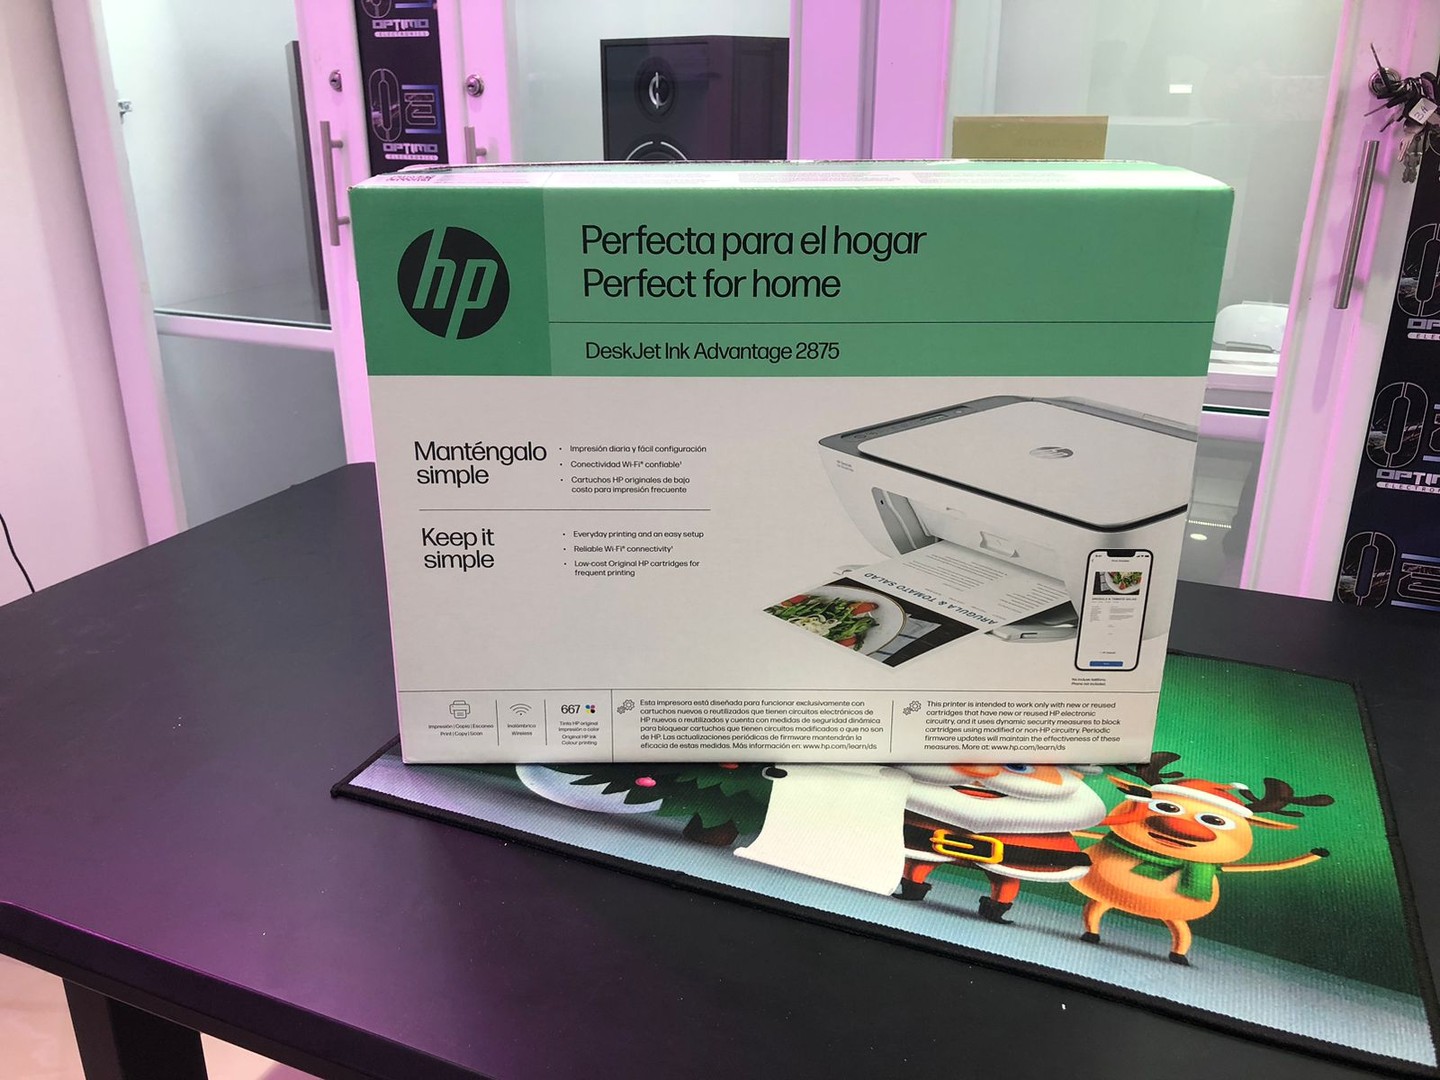 impresoras y scanners - Impresora Multifunción a wifi y Bluetooth HP 2875 Todo en 1, Nueva y Sellada 6